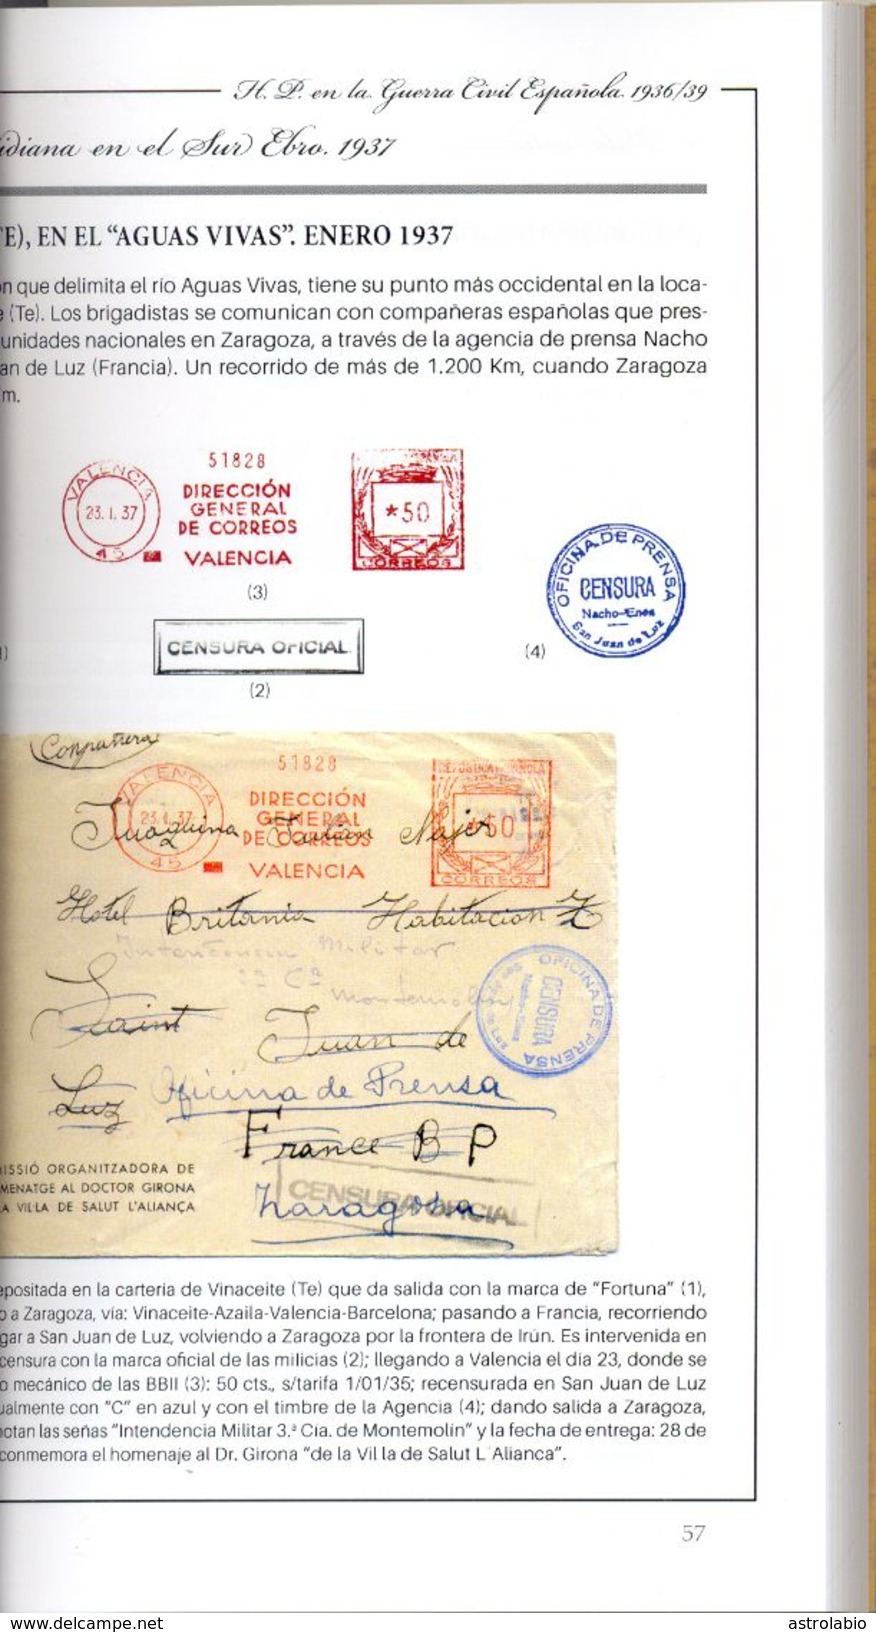 Historia Postal En La Guerra Civil Española Vol II - Teruel 1936-39  Ver 7 Scan - Military Mail And Military History